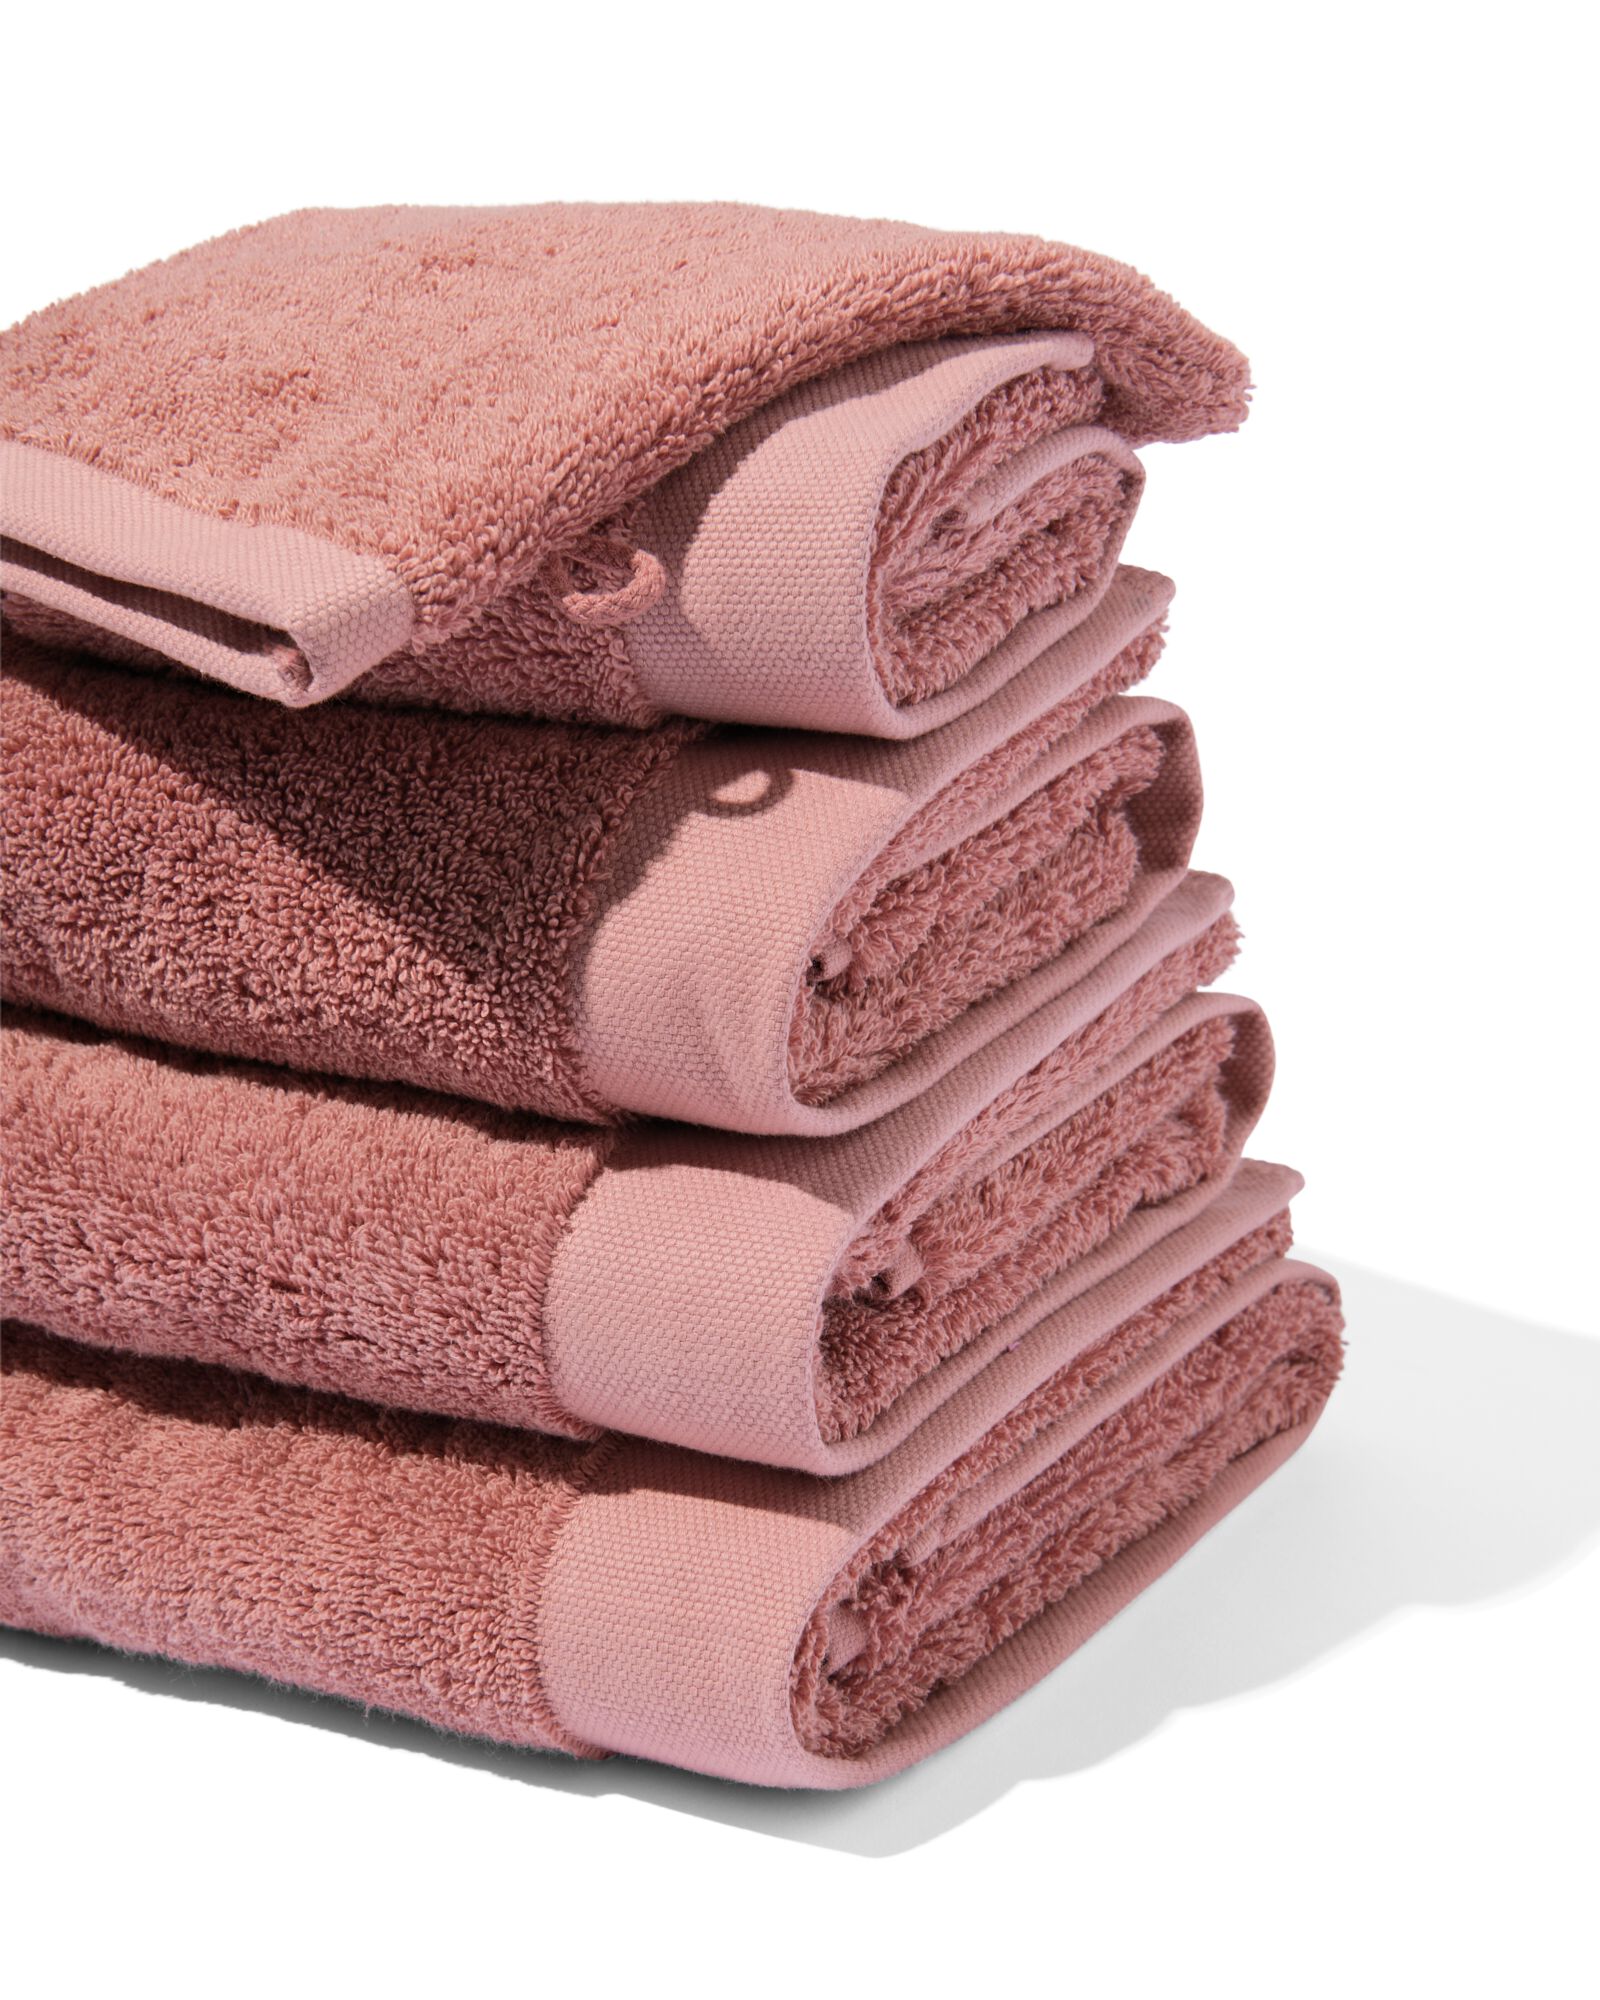 hema serviettes de bain - hôtel extra doux rose foncé (rose foncé)